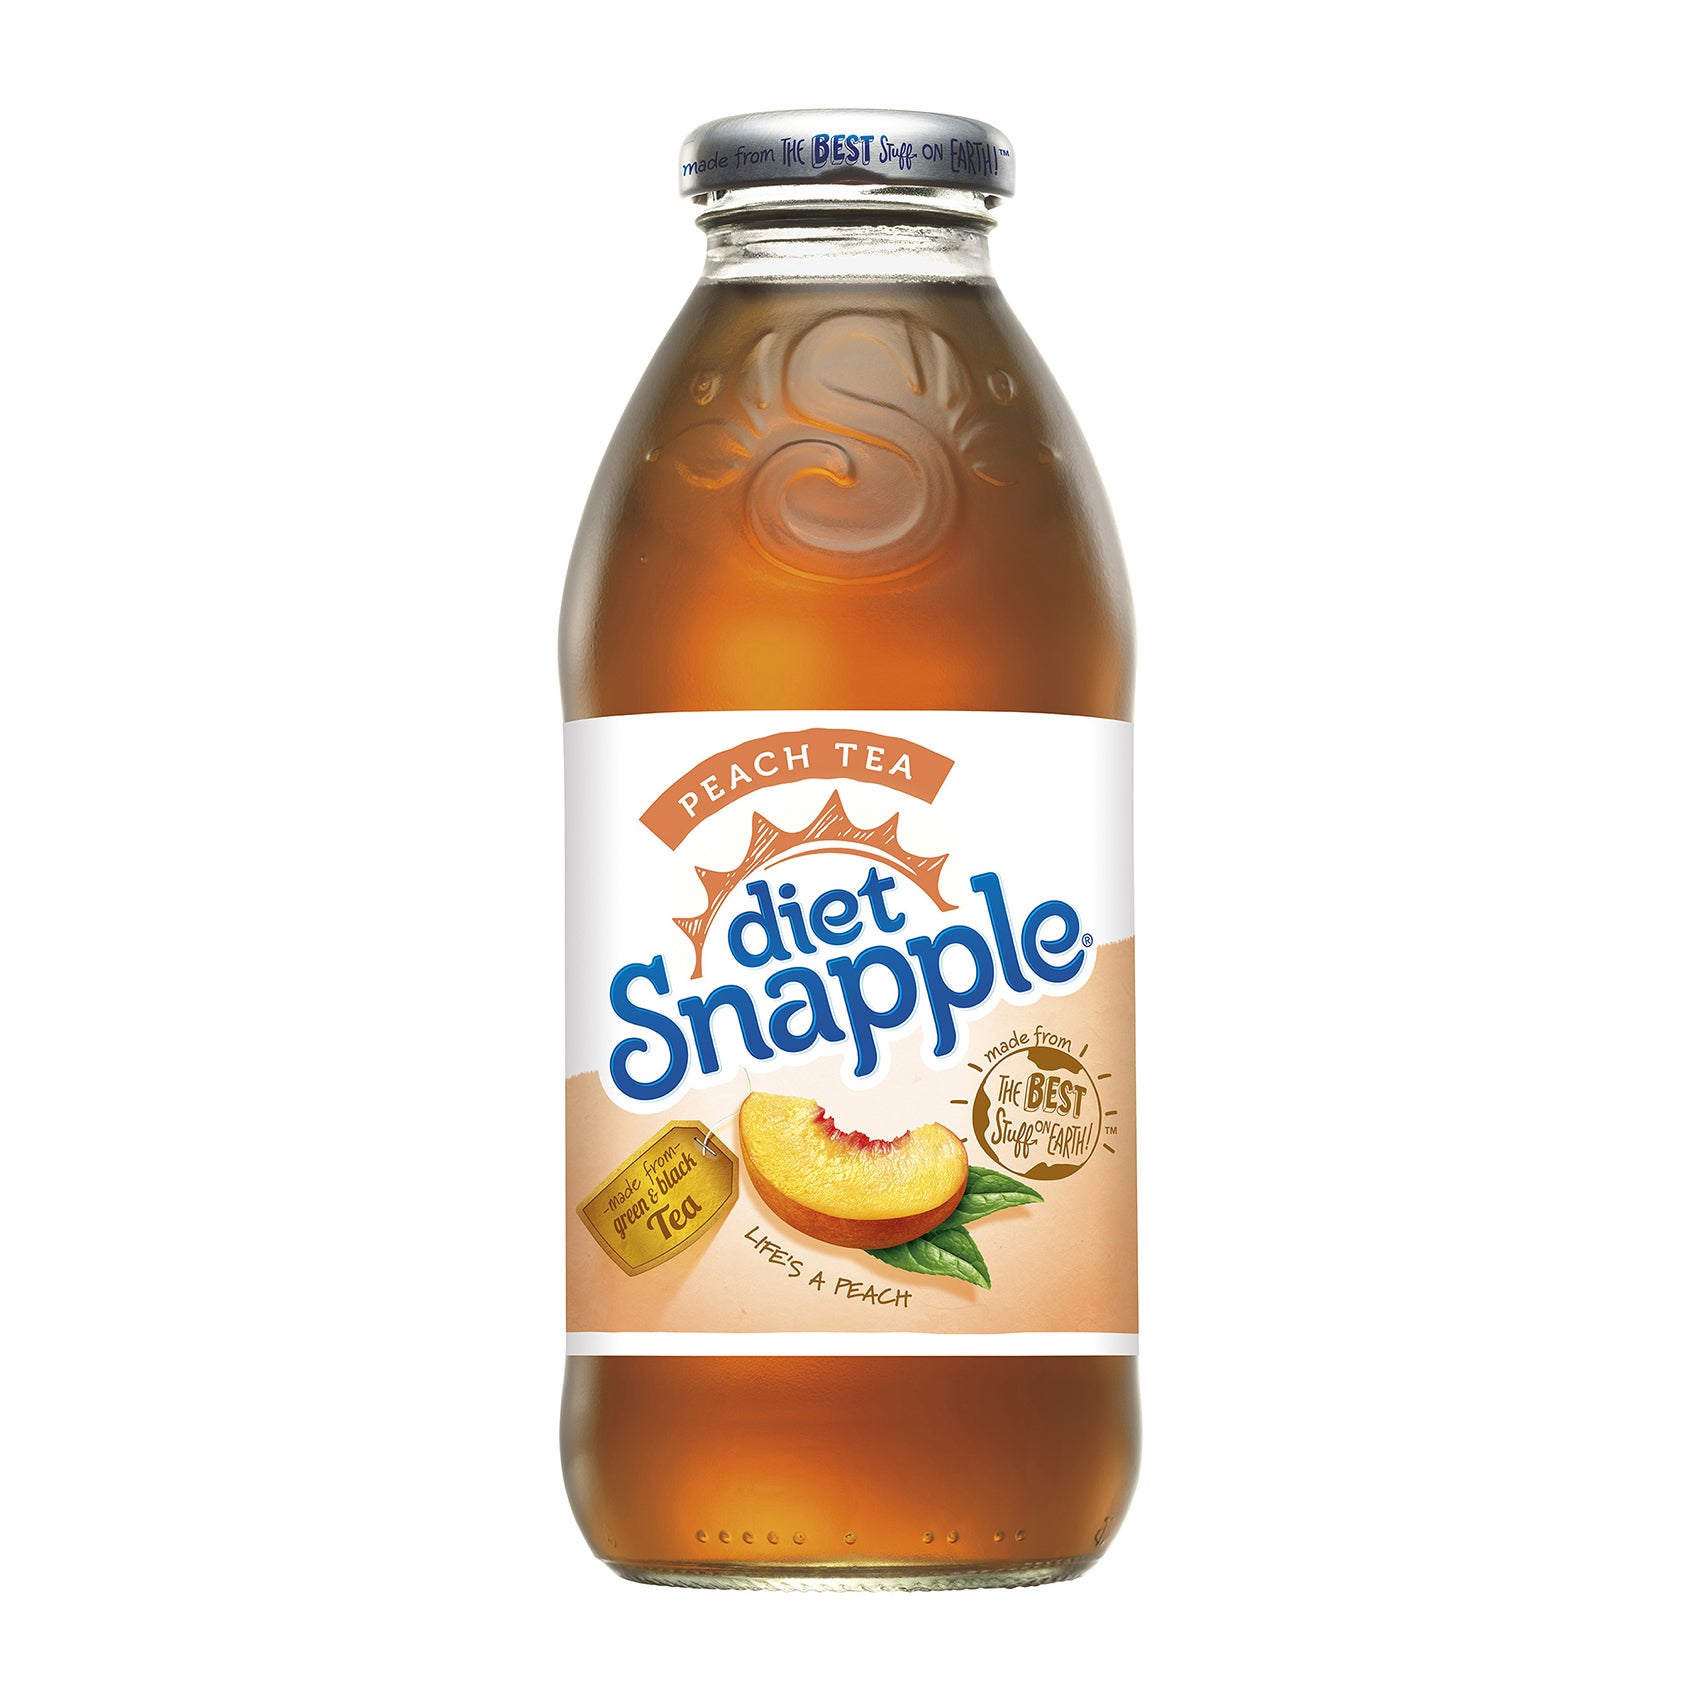 Snapple® Peach Iced Tea Drink, 20 fl oz - Foods Co.